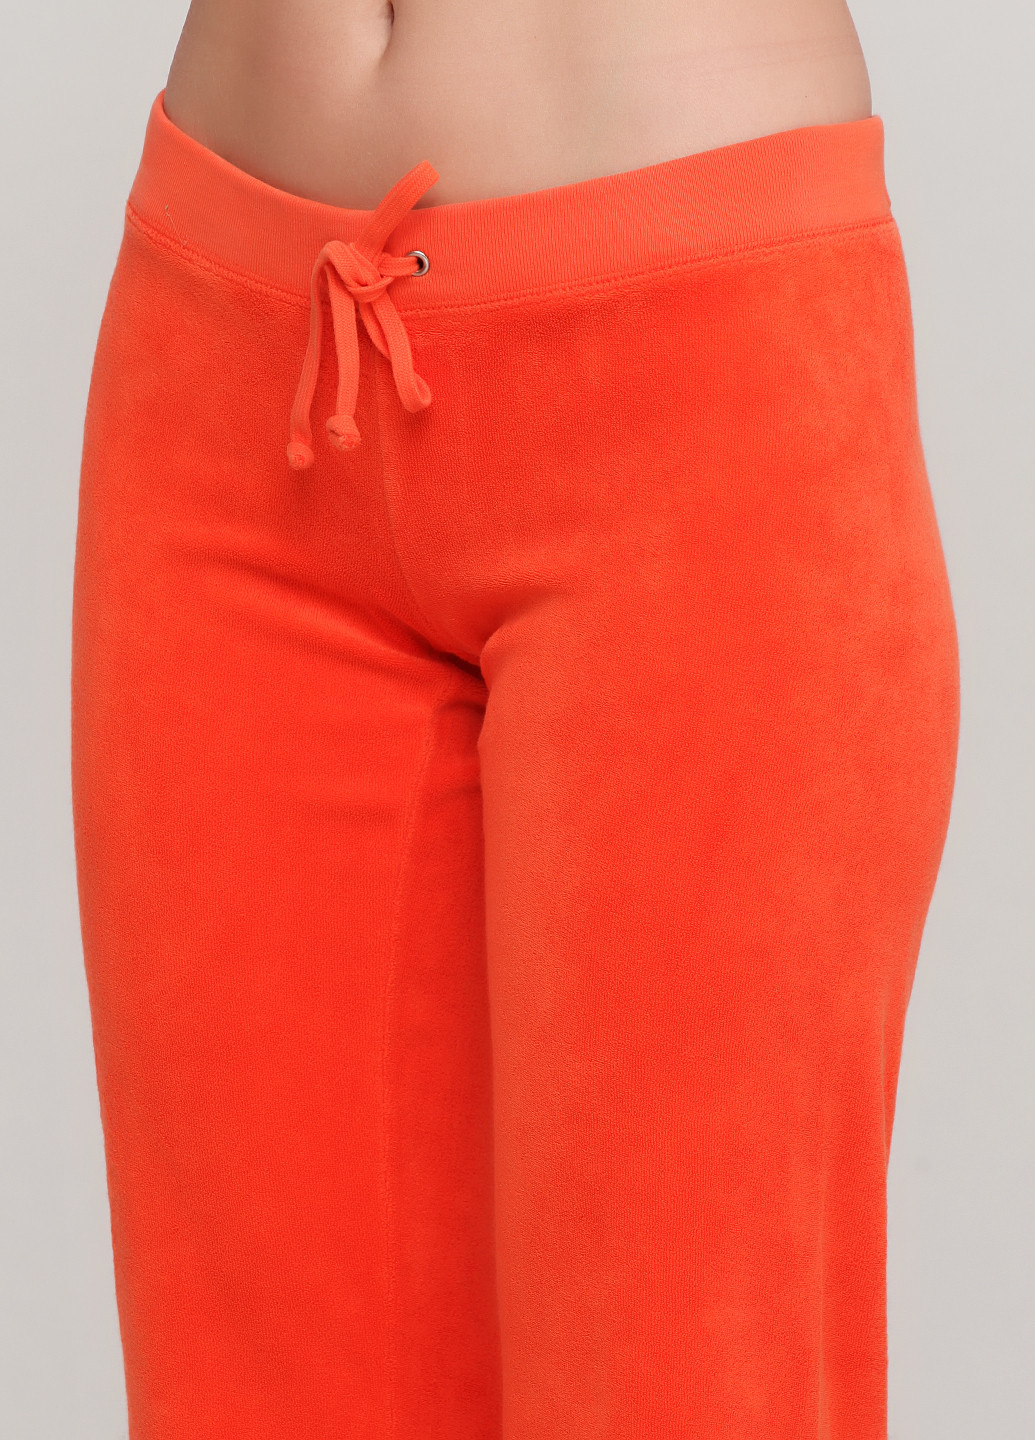 Костюм (толстовка, брюки) Juicy Couture брючный однотонный оранжевый спортивный